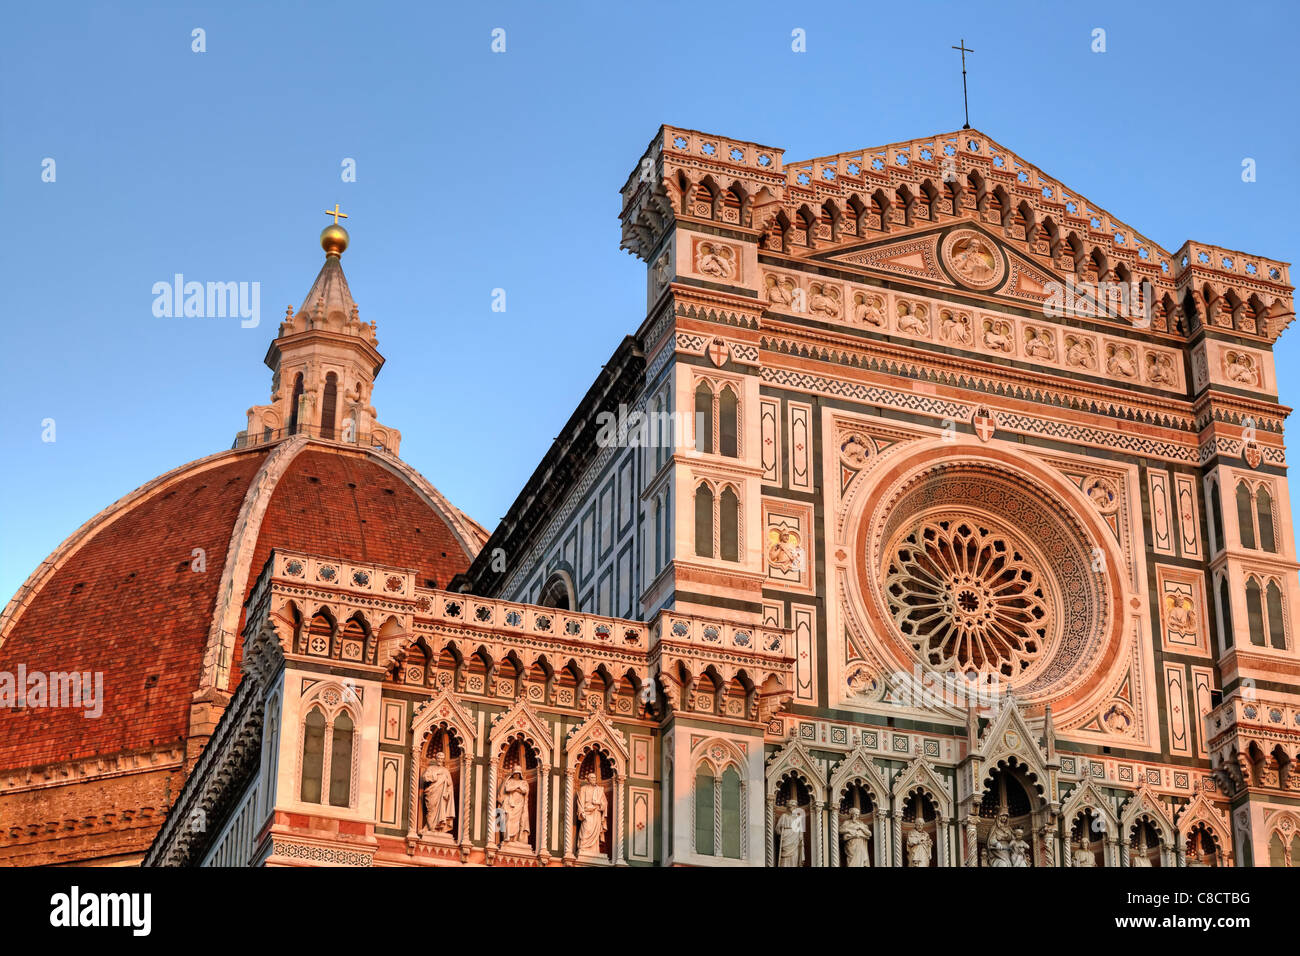 Florenz - der Dom von Florenz, in einer Detailansicht Stockfoto